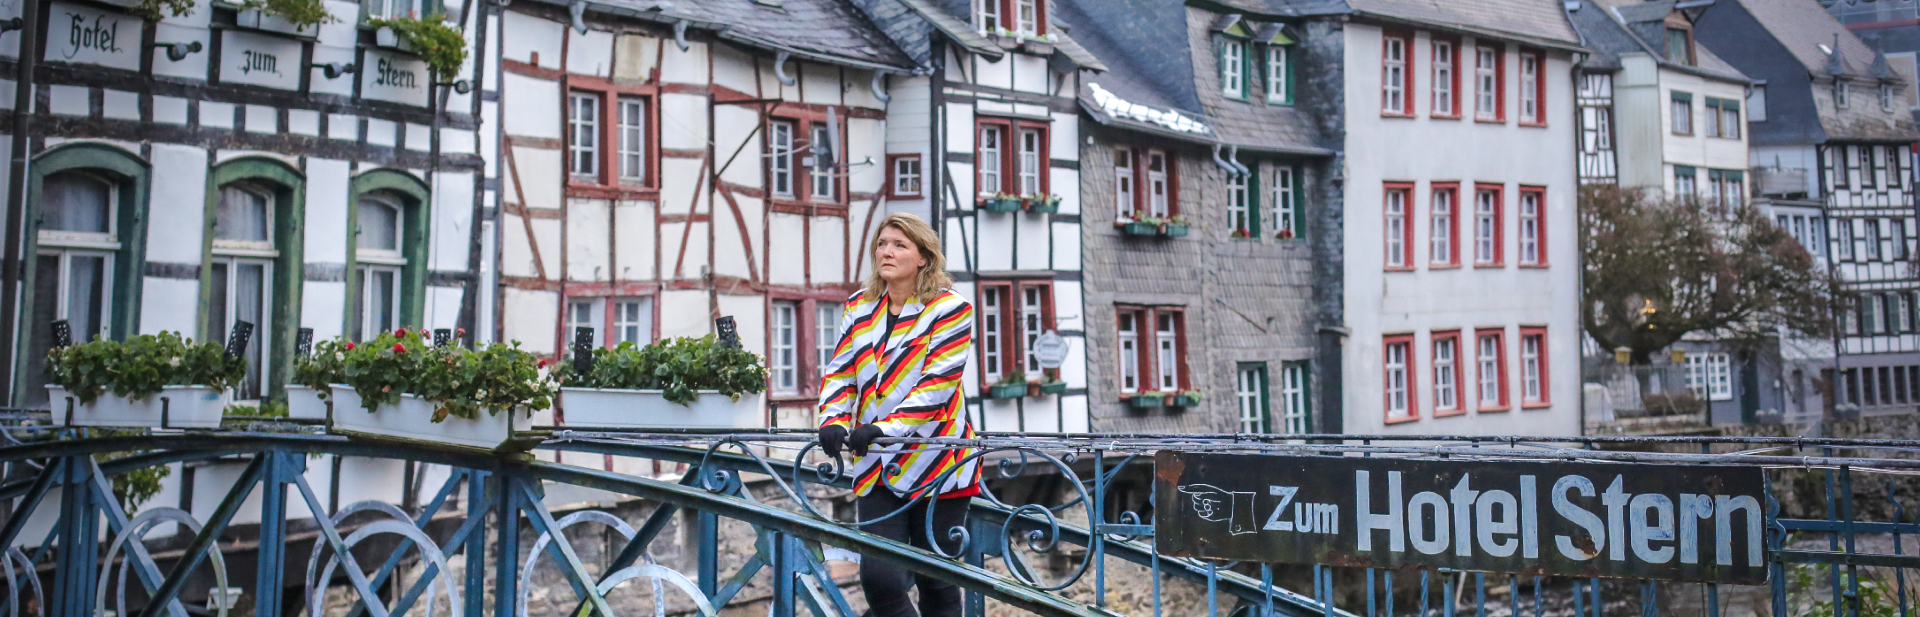 Sabine kijkt uit over de Rur in het historisch centrum van Monschau in de Eifel in Duitsland